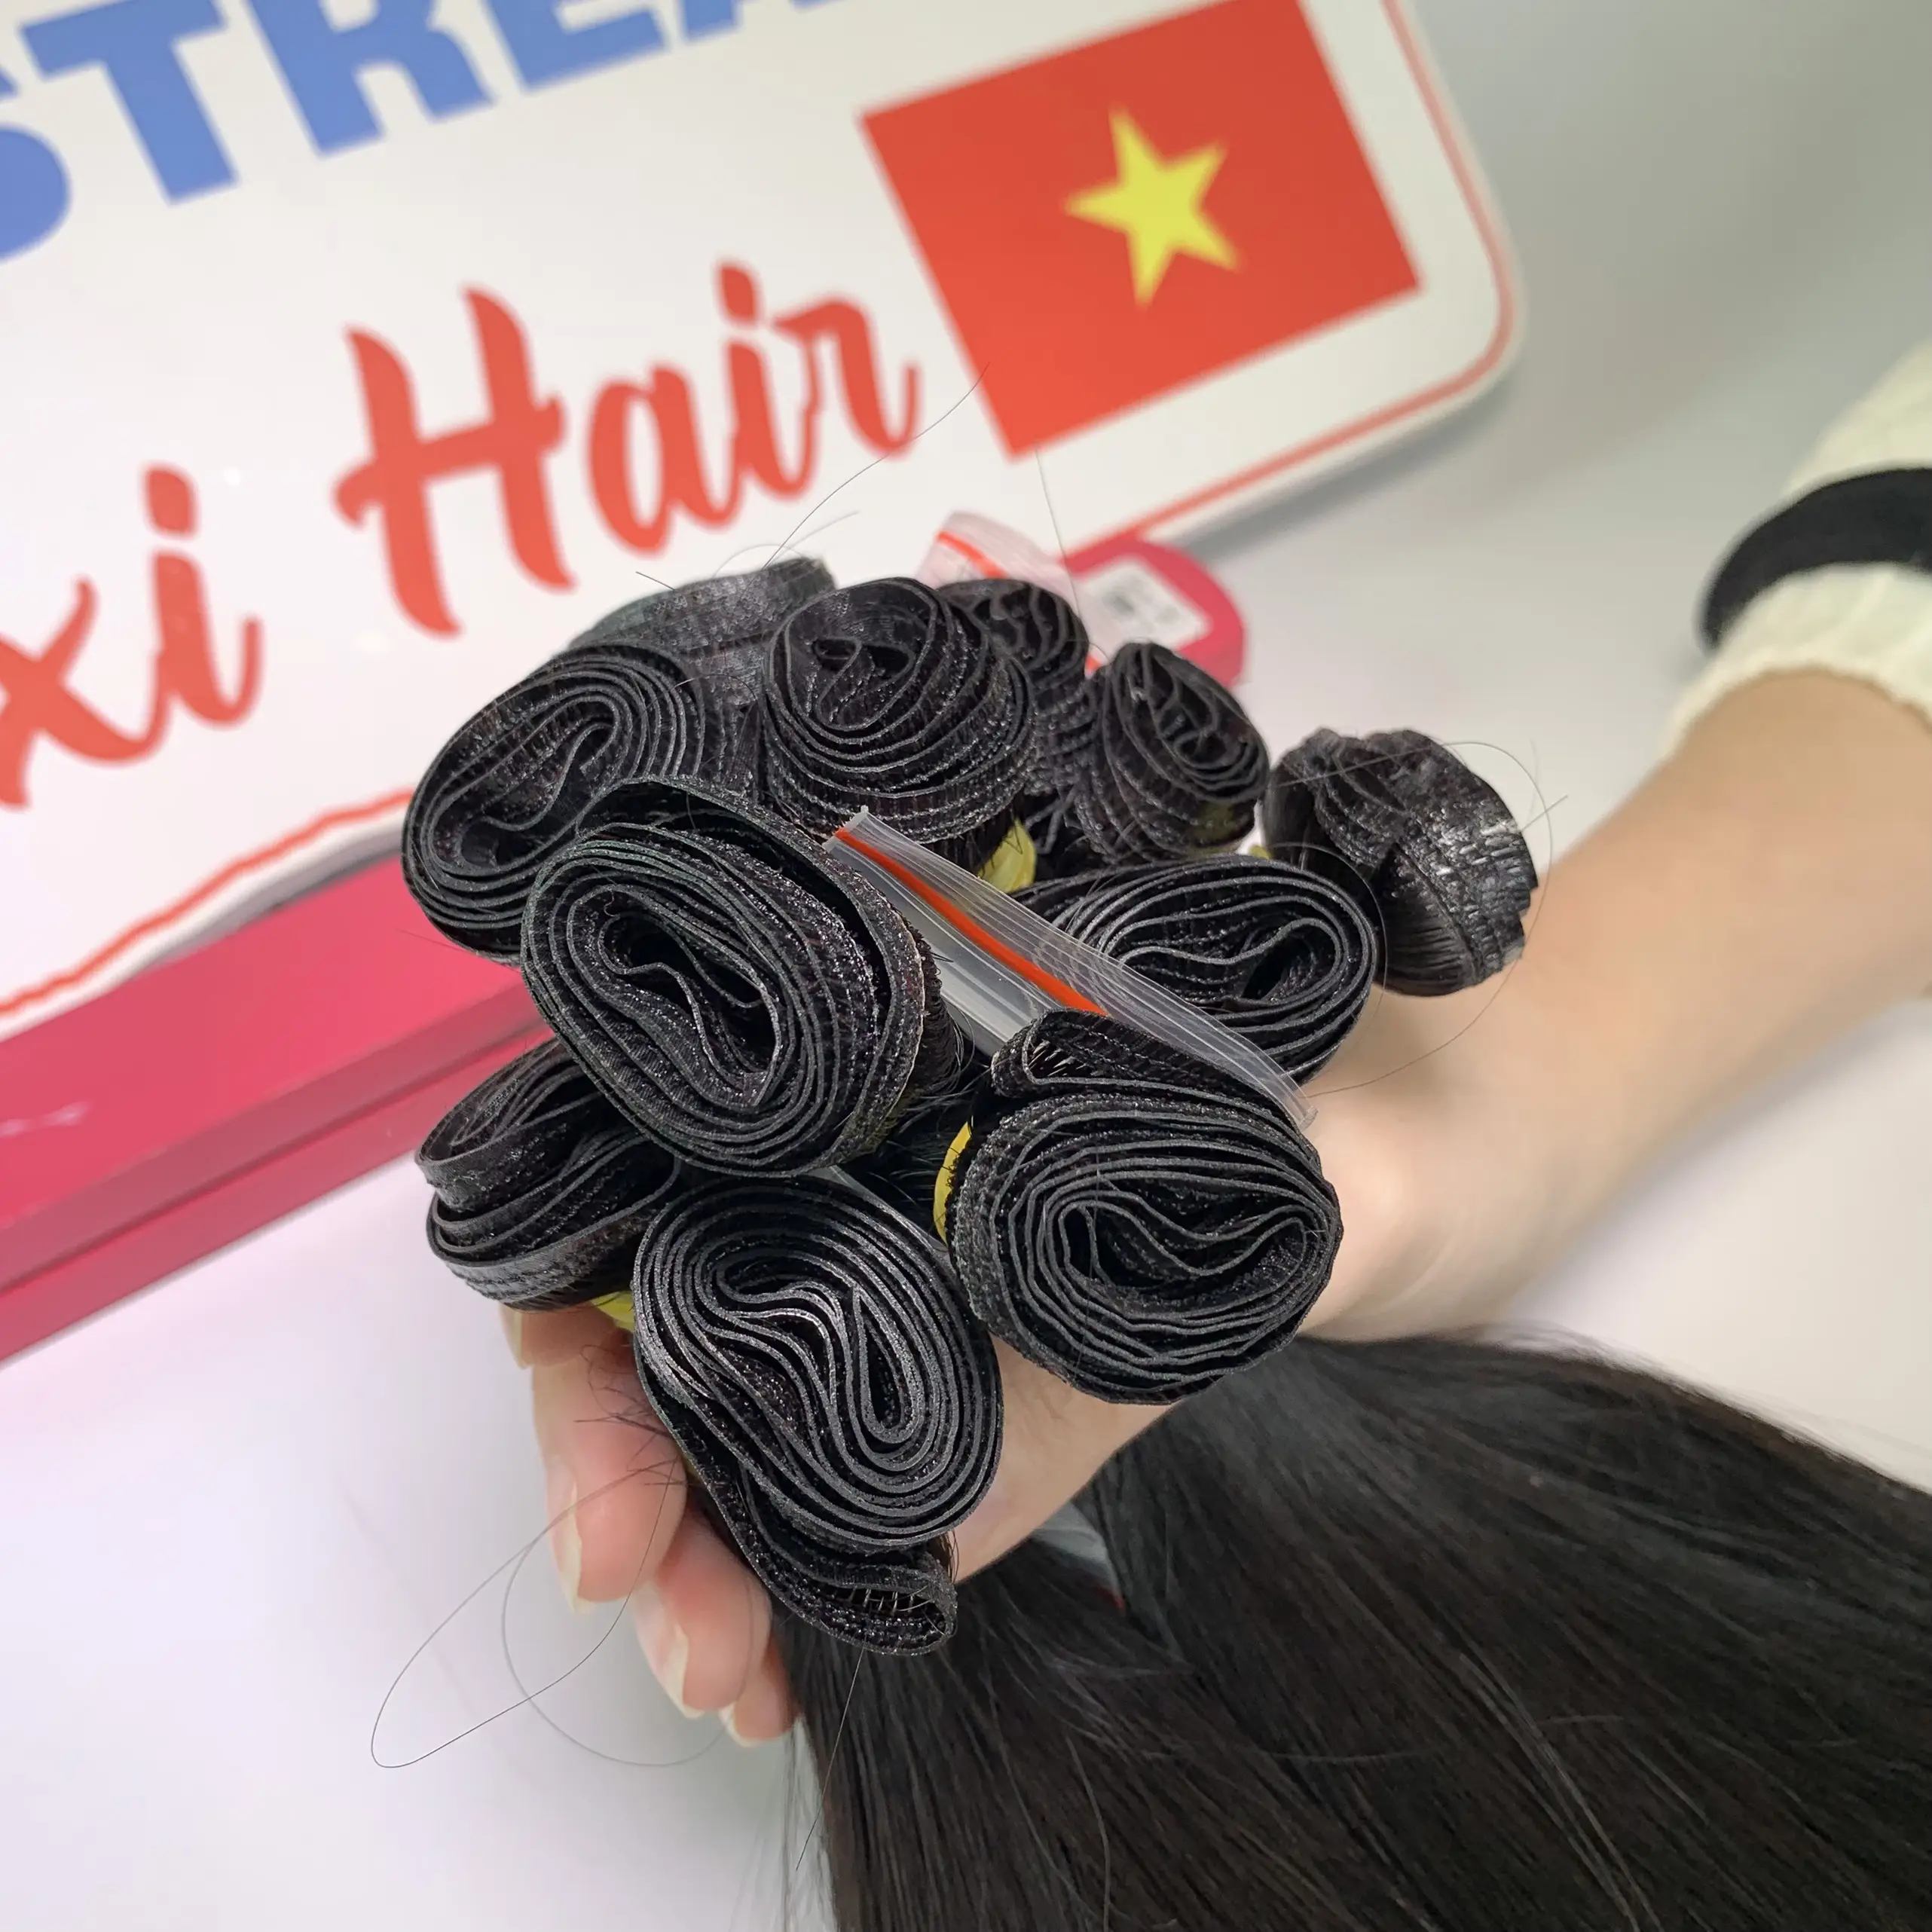 צבע ערב גאוני 1 ערב תוספות שיער אדם מותג פרטי יופי וטיפוח אישי שיער בתולה תוצרת וייטנאם